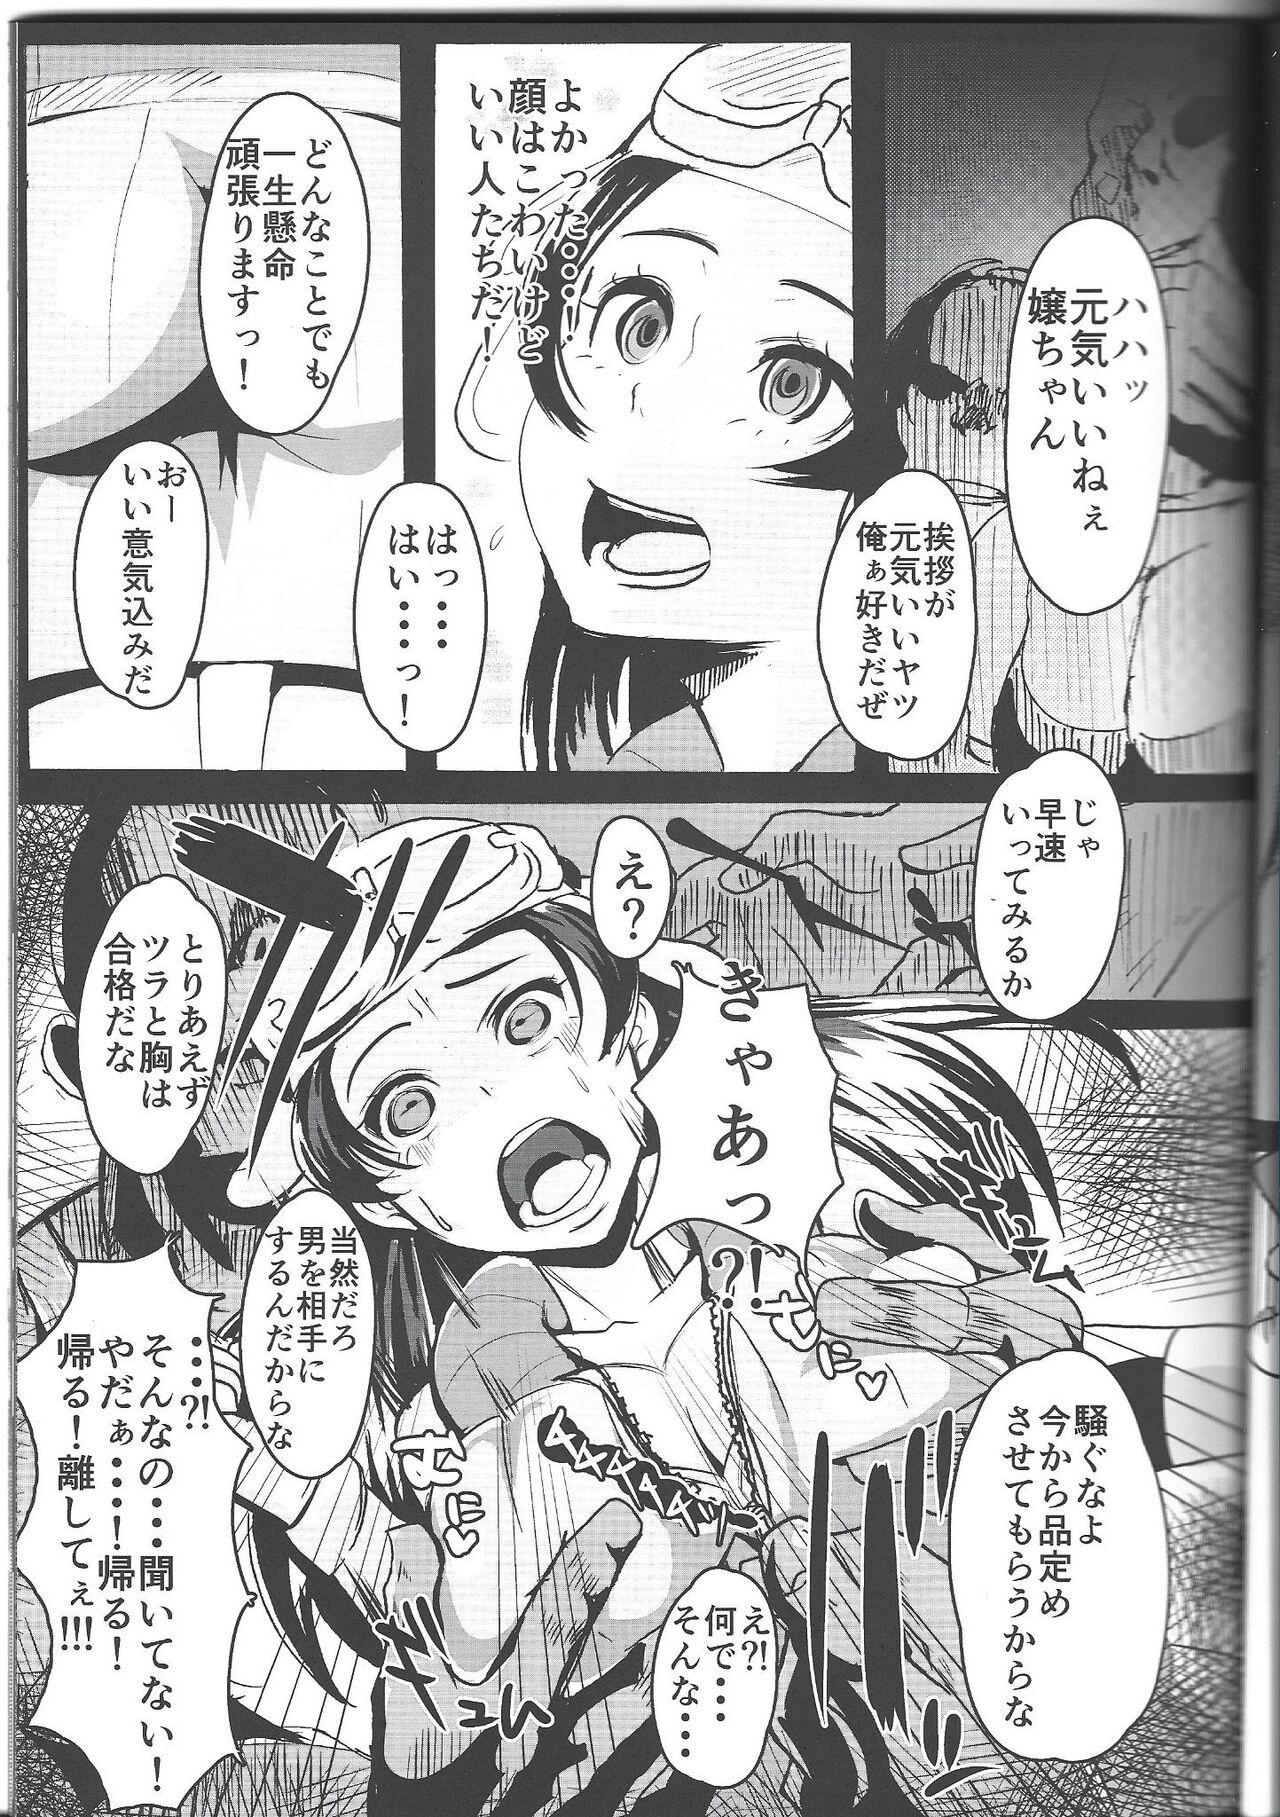 Twistys Ichininmae no Megami Zenpen - The Full Grown Goddess part 1 - Shin megami tensei Amigos - Page 8